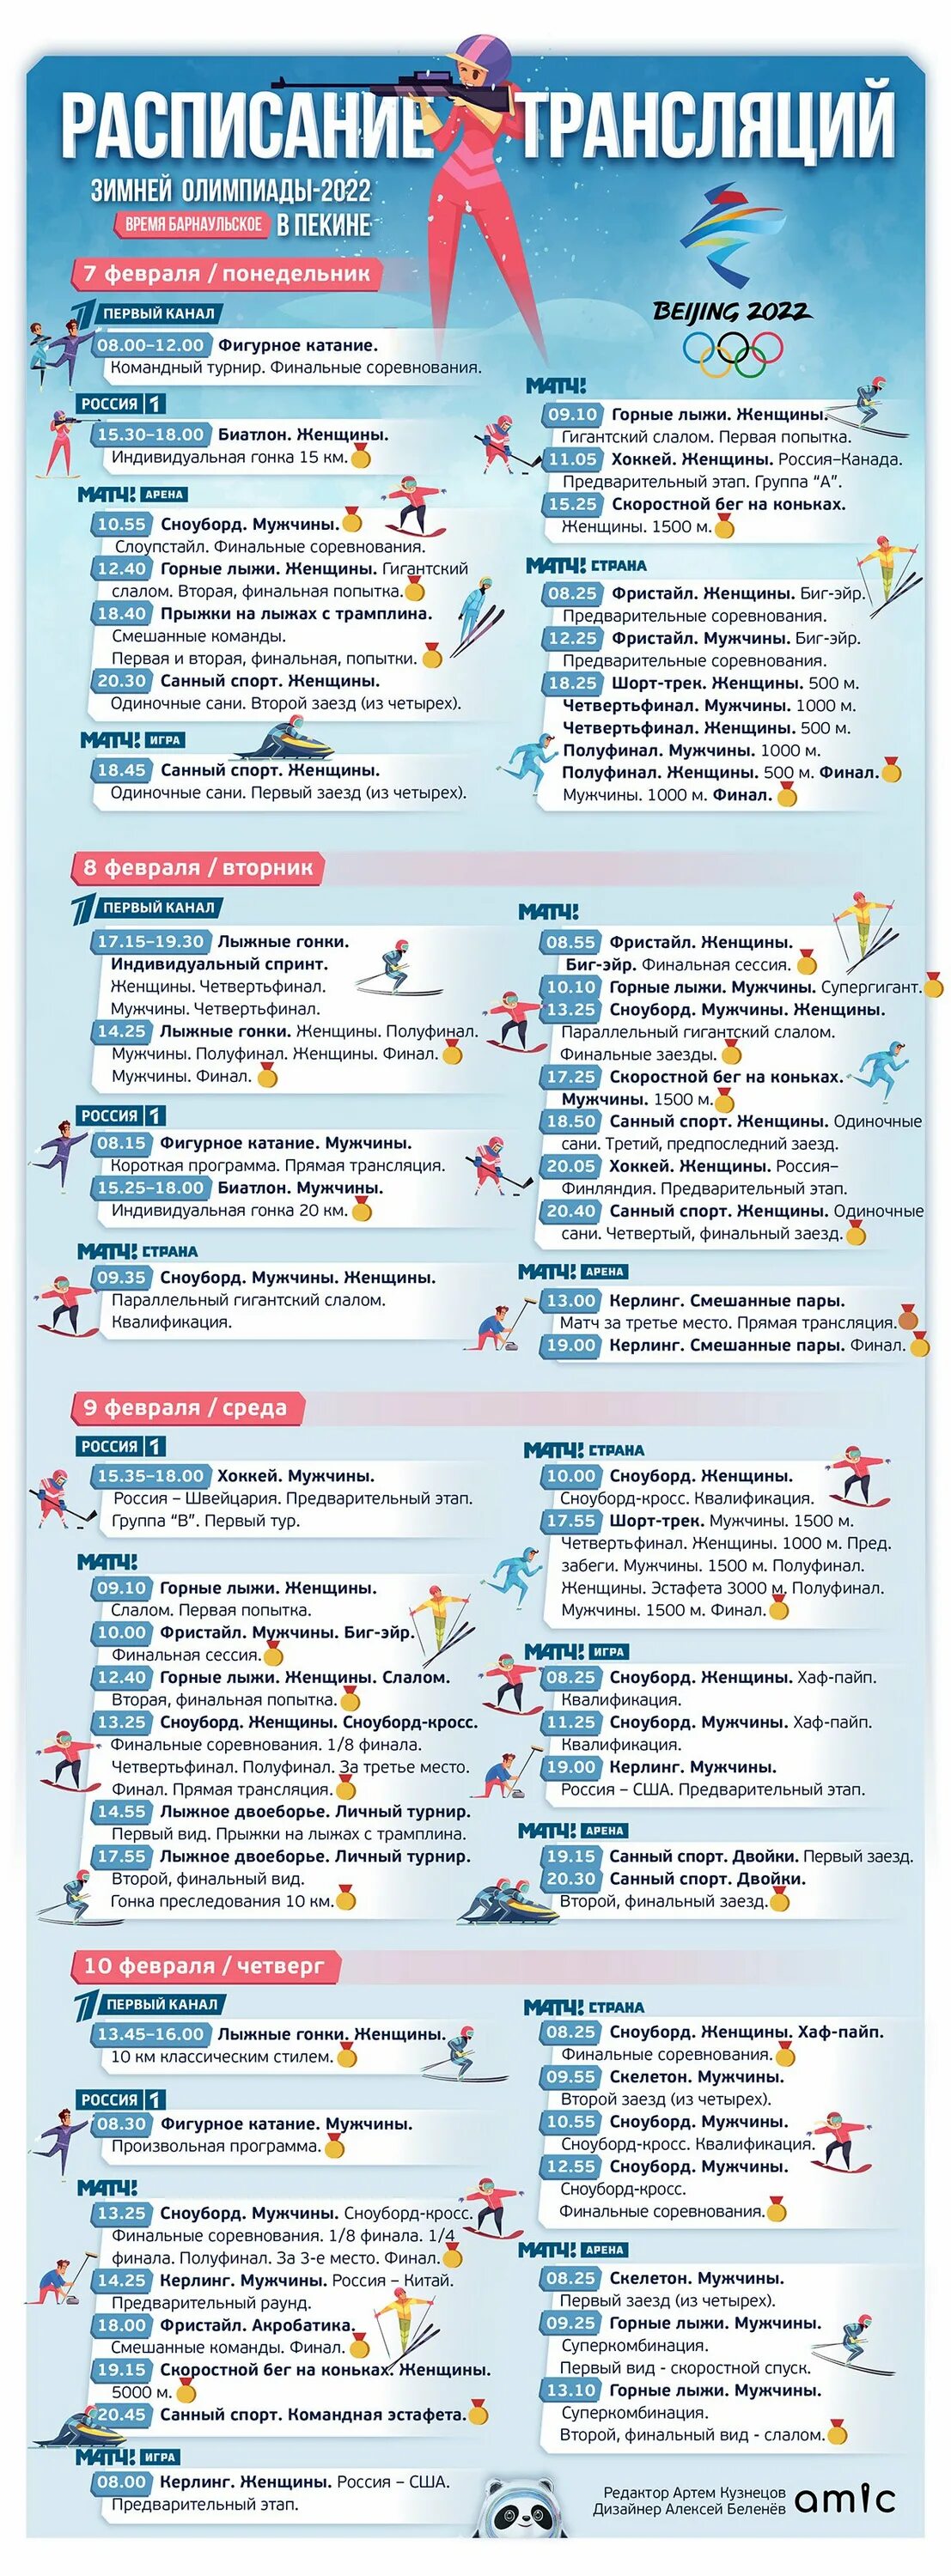 Биатлон расписание трансляций. Инфографика Олимпийские игры. Программа на неделю Олимпийских игр. Лыжные гонки расписание трансляций россии по телевизору